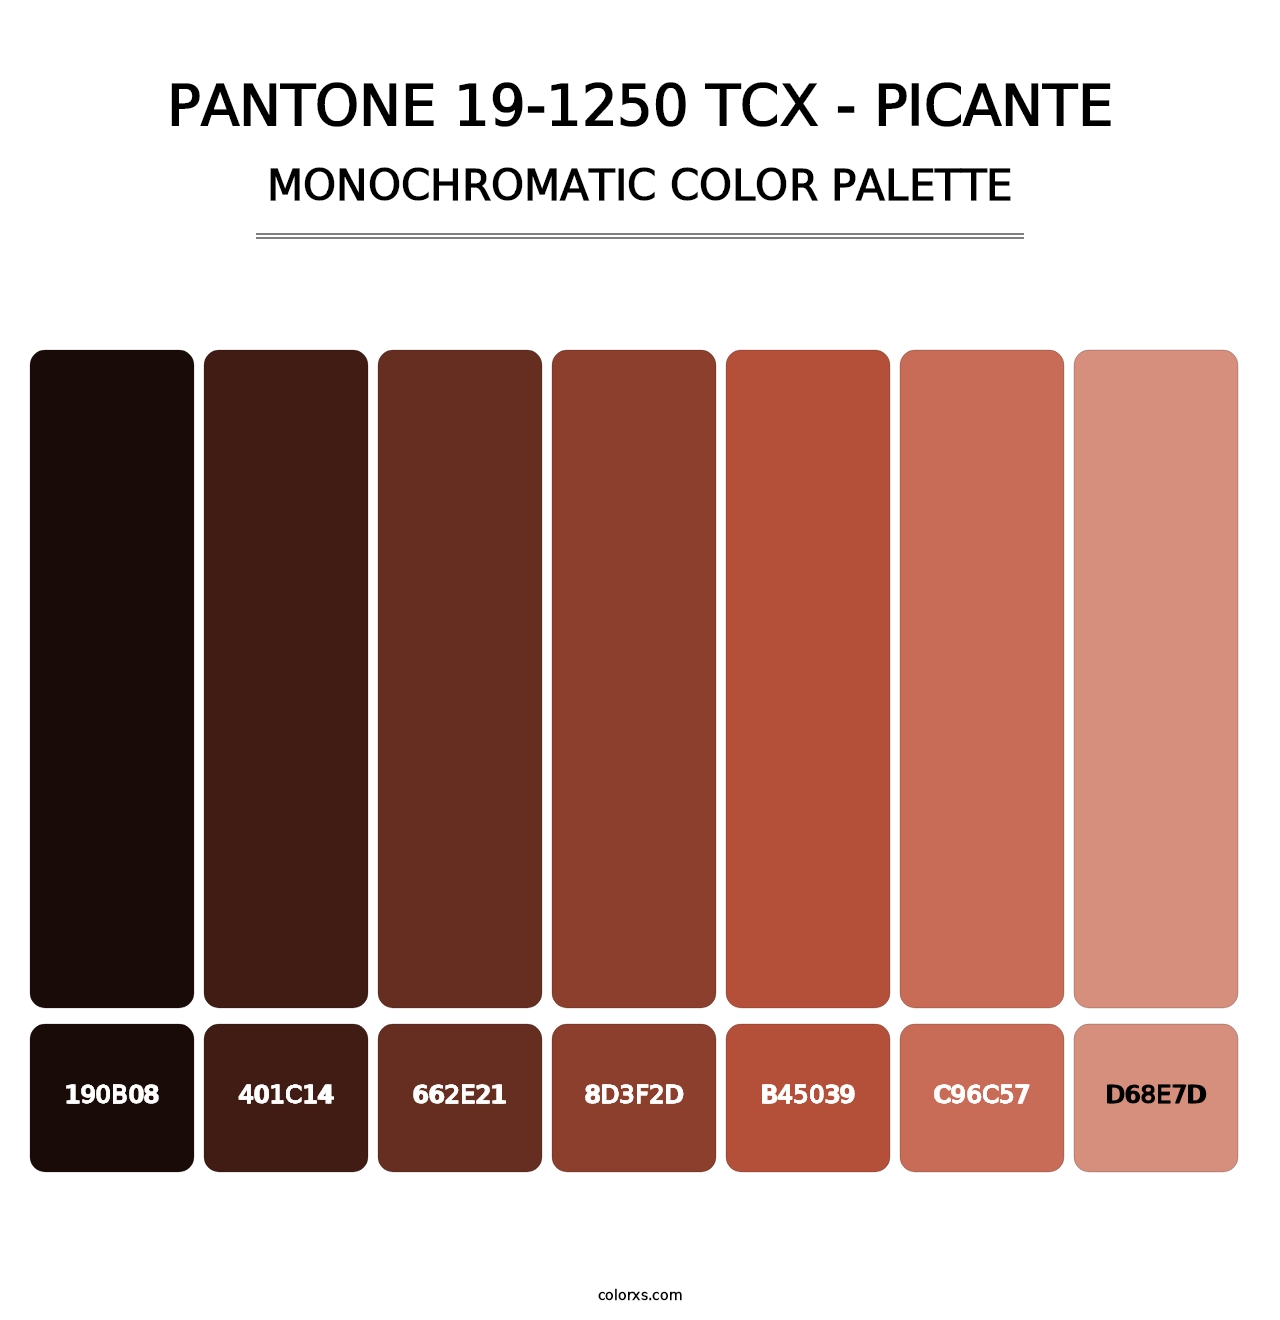 PANTONE 19-1250 TCX - Picante - Monochromatic Color Palette